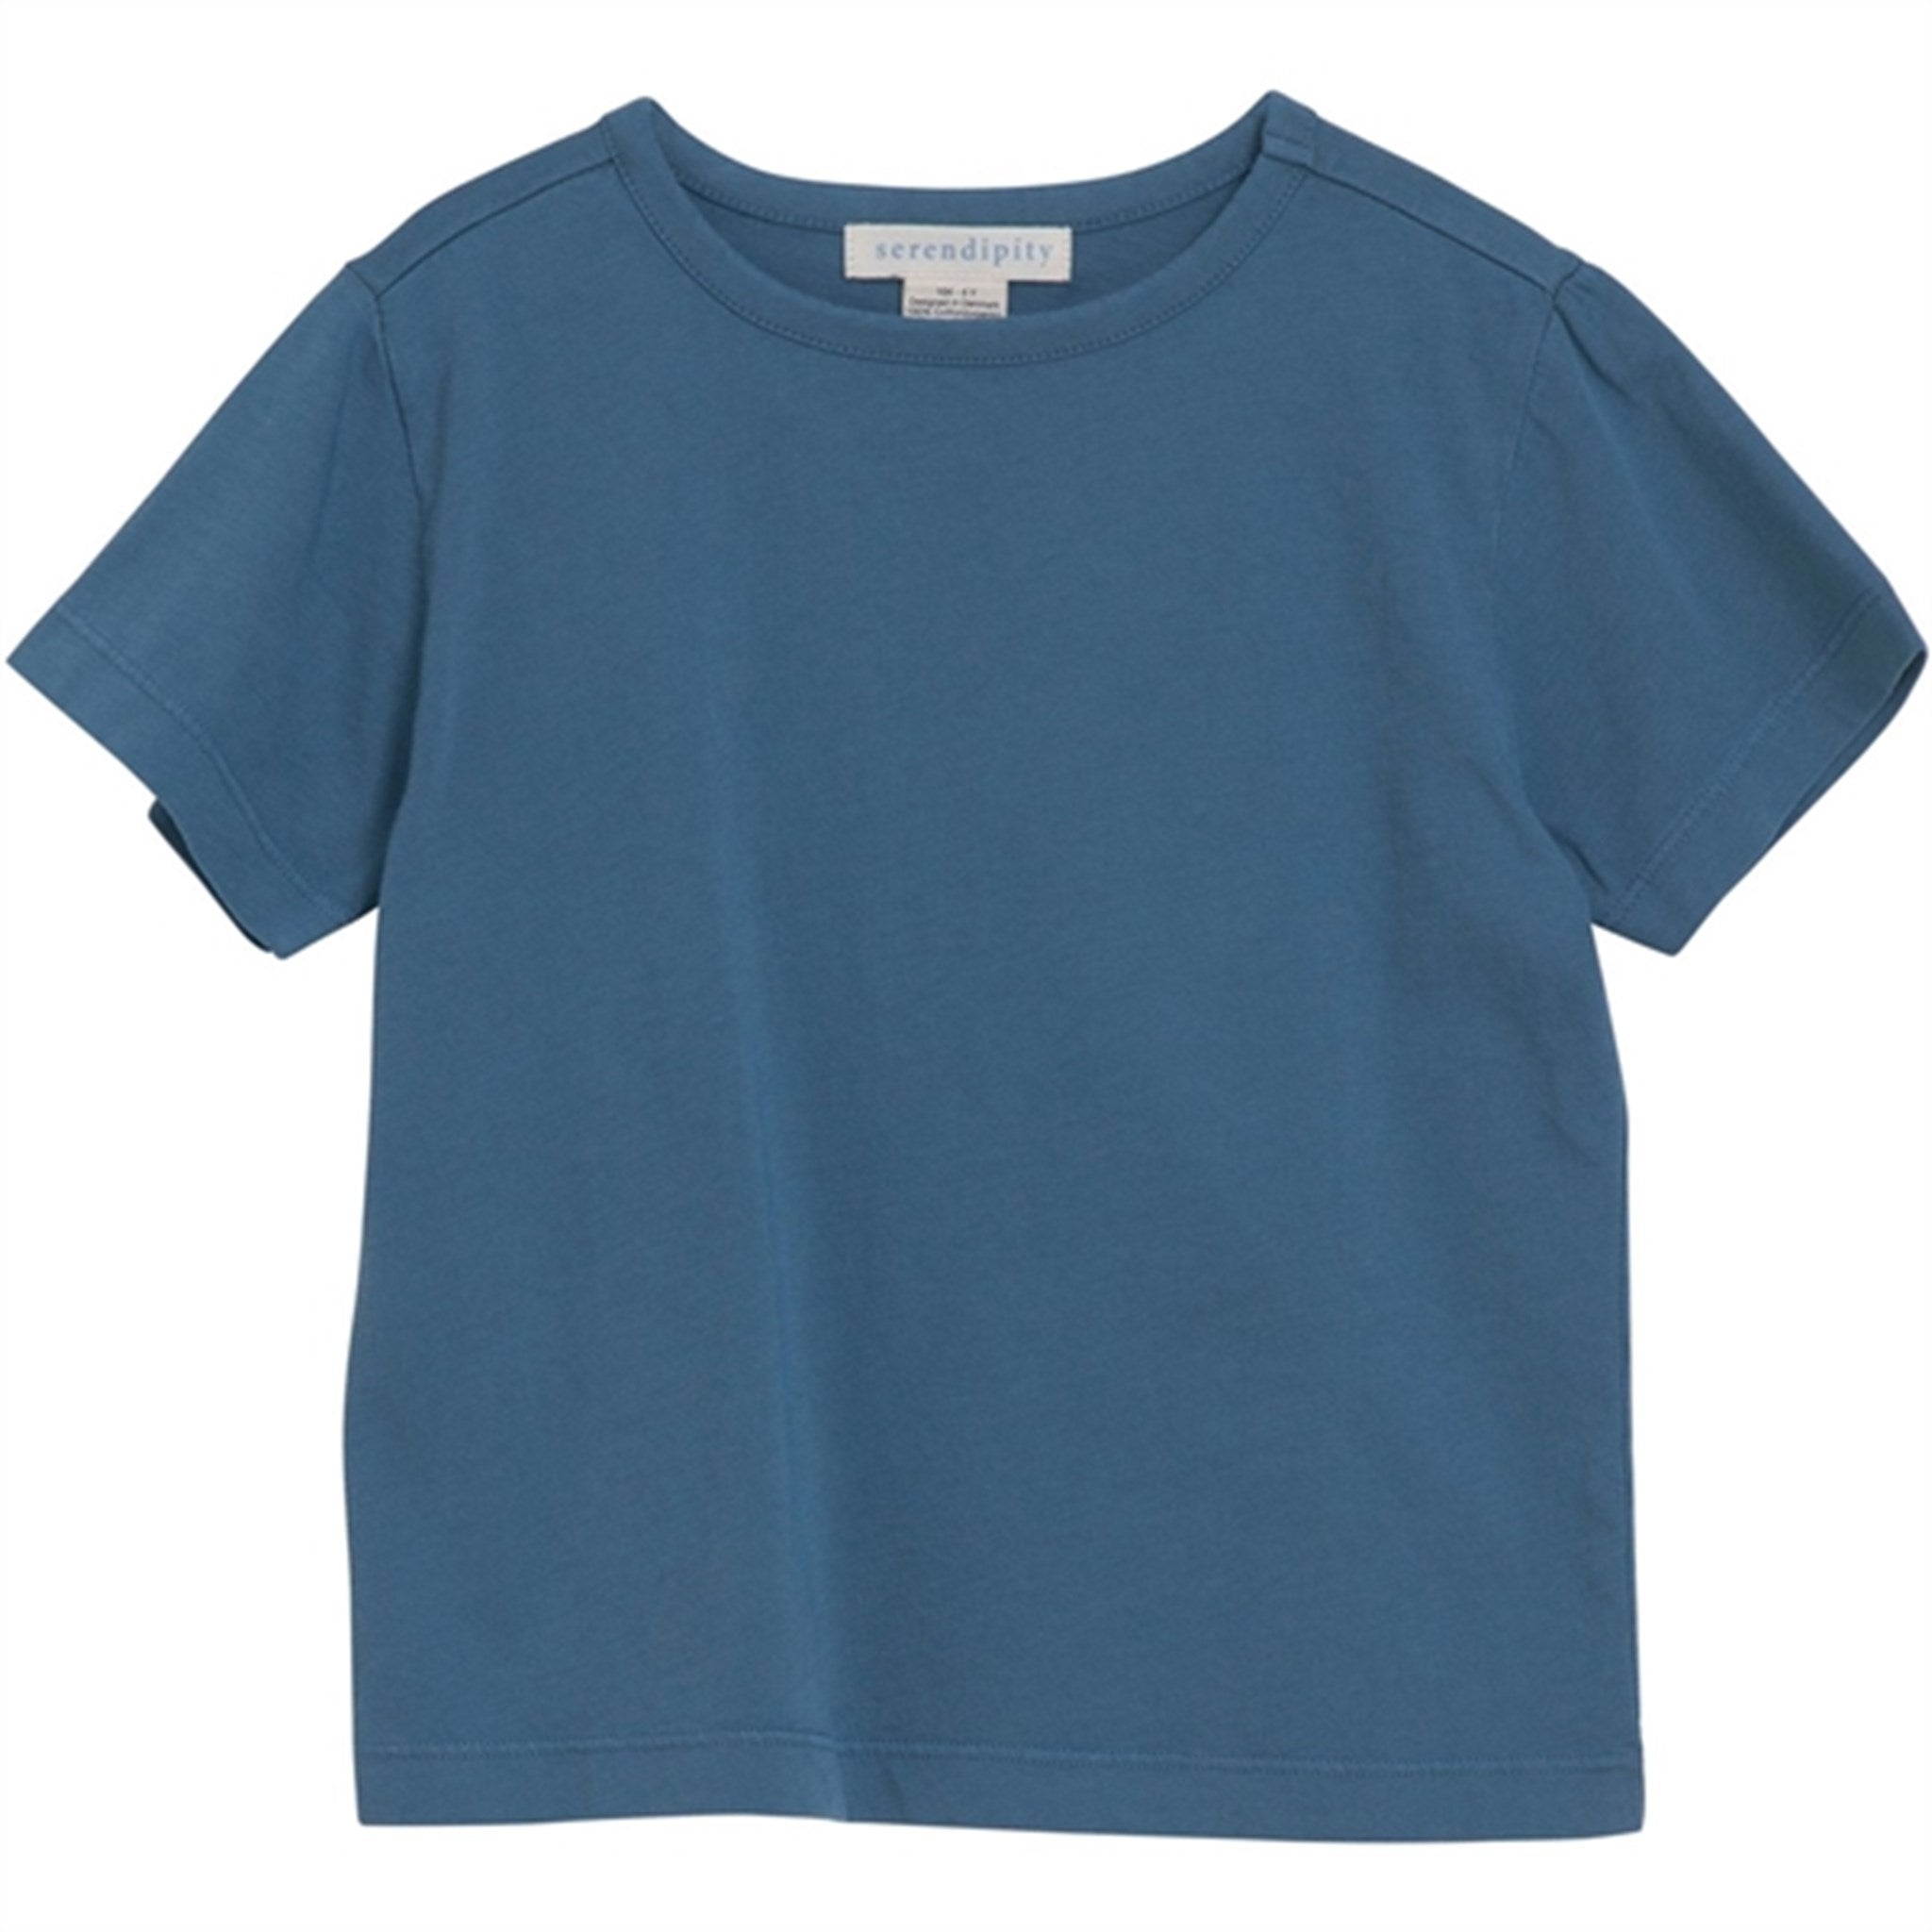 Serendipity Pale Blue Jersey T-shirt